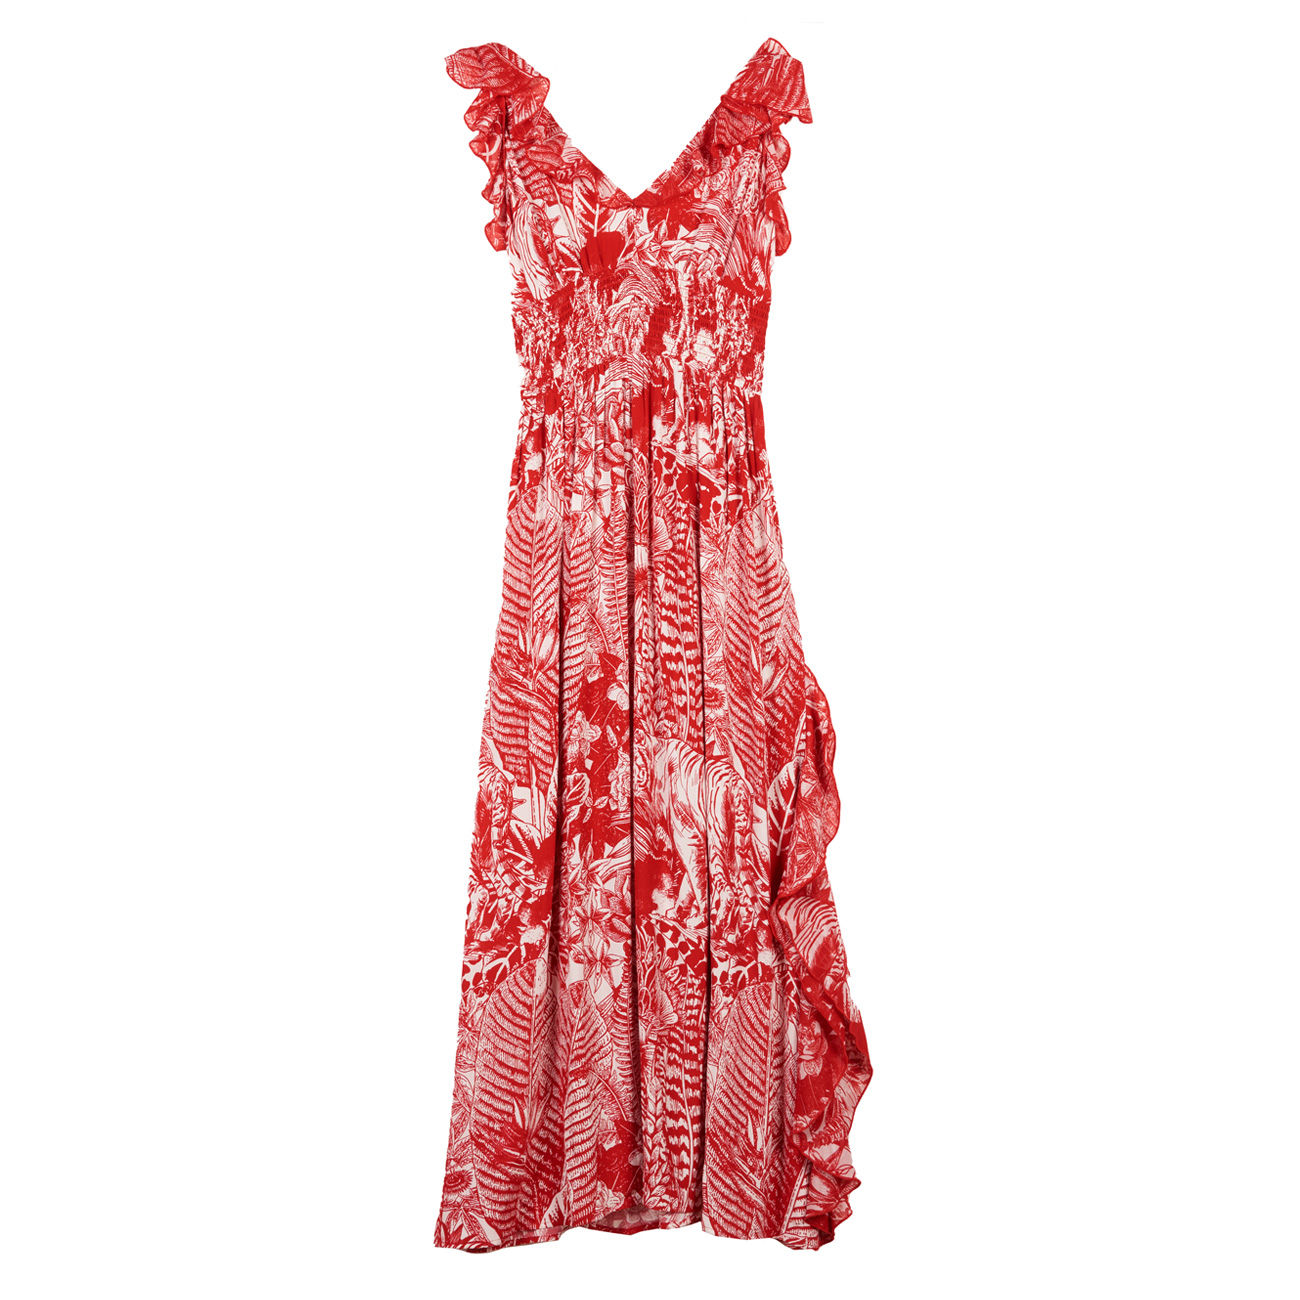 verkorten dichtbij verbergen SILVIAN HEACH LONG DRESS SIRIUS Woman Red White | Mascheroni Store